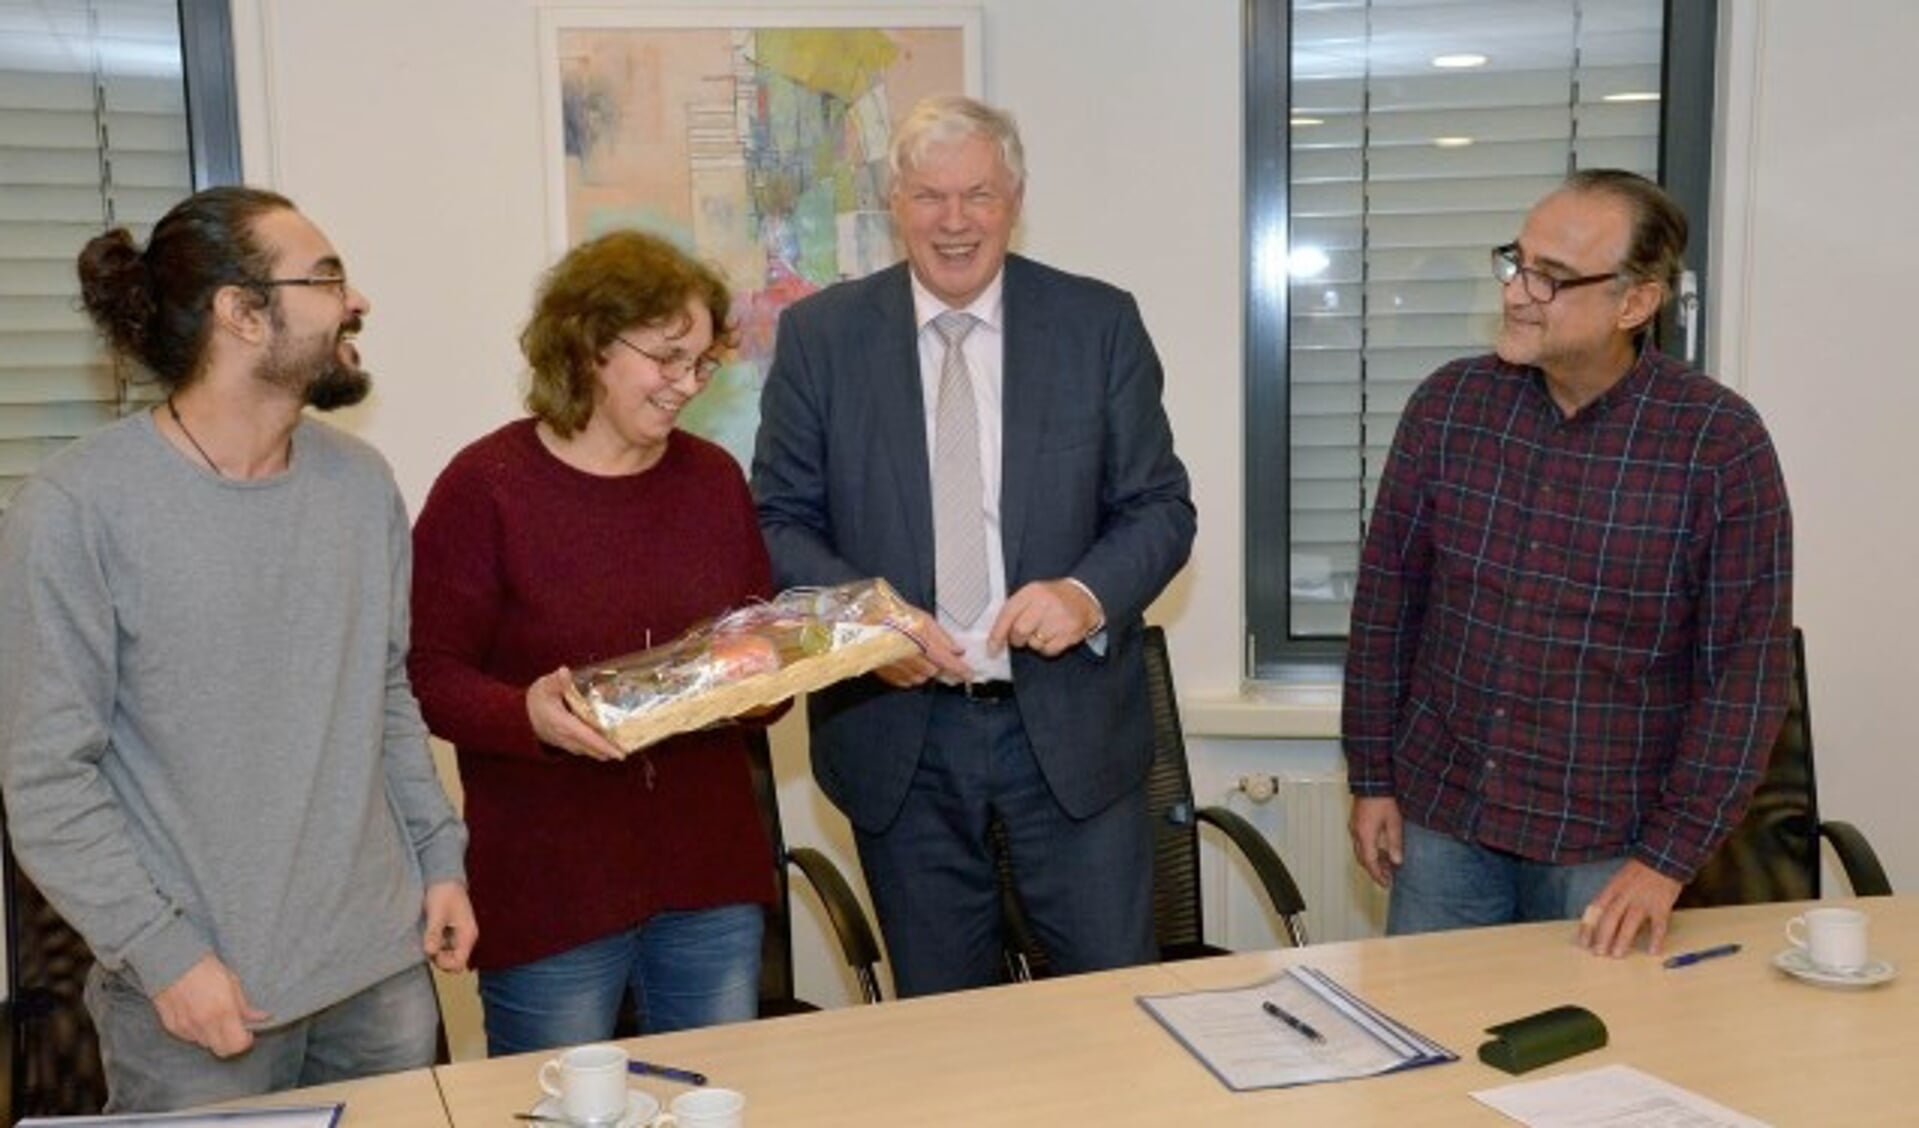 Het Syrische gezin krijgt na de ondertekening van wethouder Jan Vlaar een mandje met streekproducten. (Foto + tekst: Paul van den Dungen)